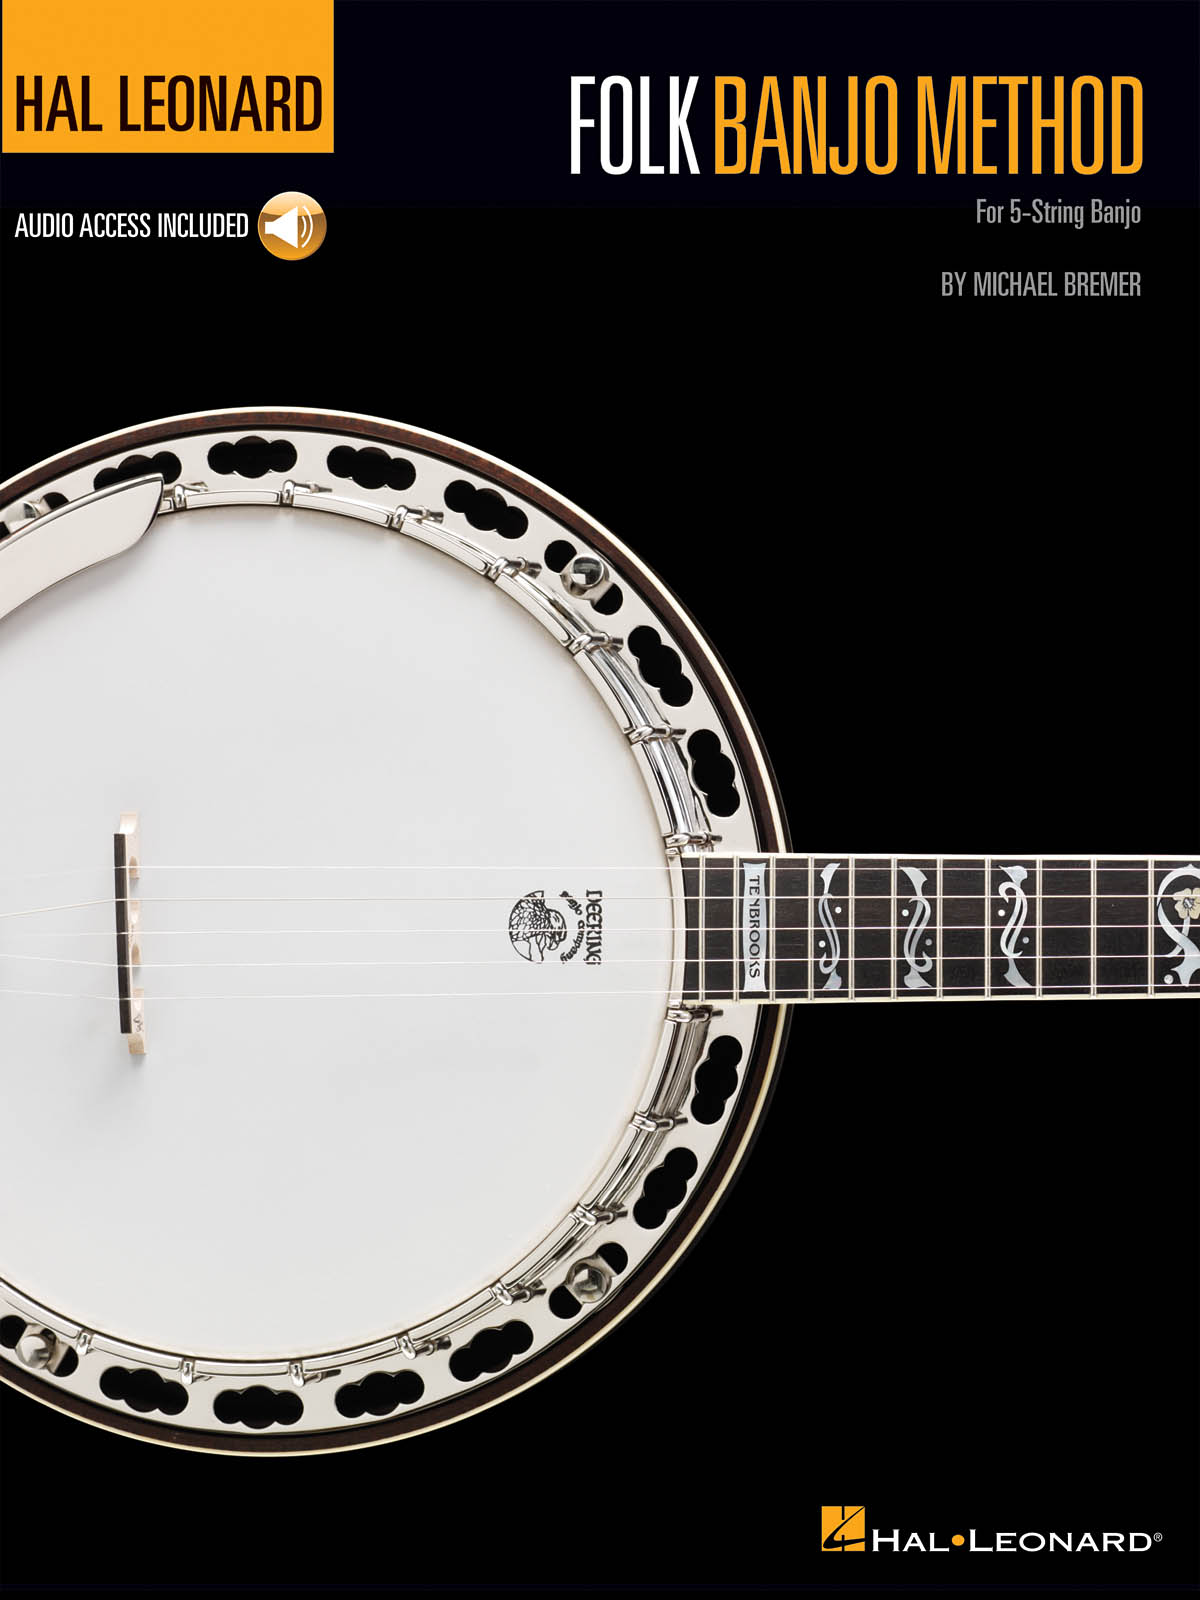 Hal Leonard Folk Banjo Method - For 5-String Banjo